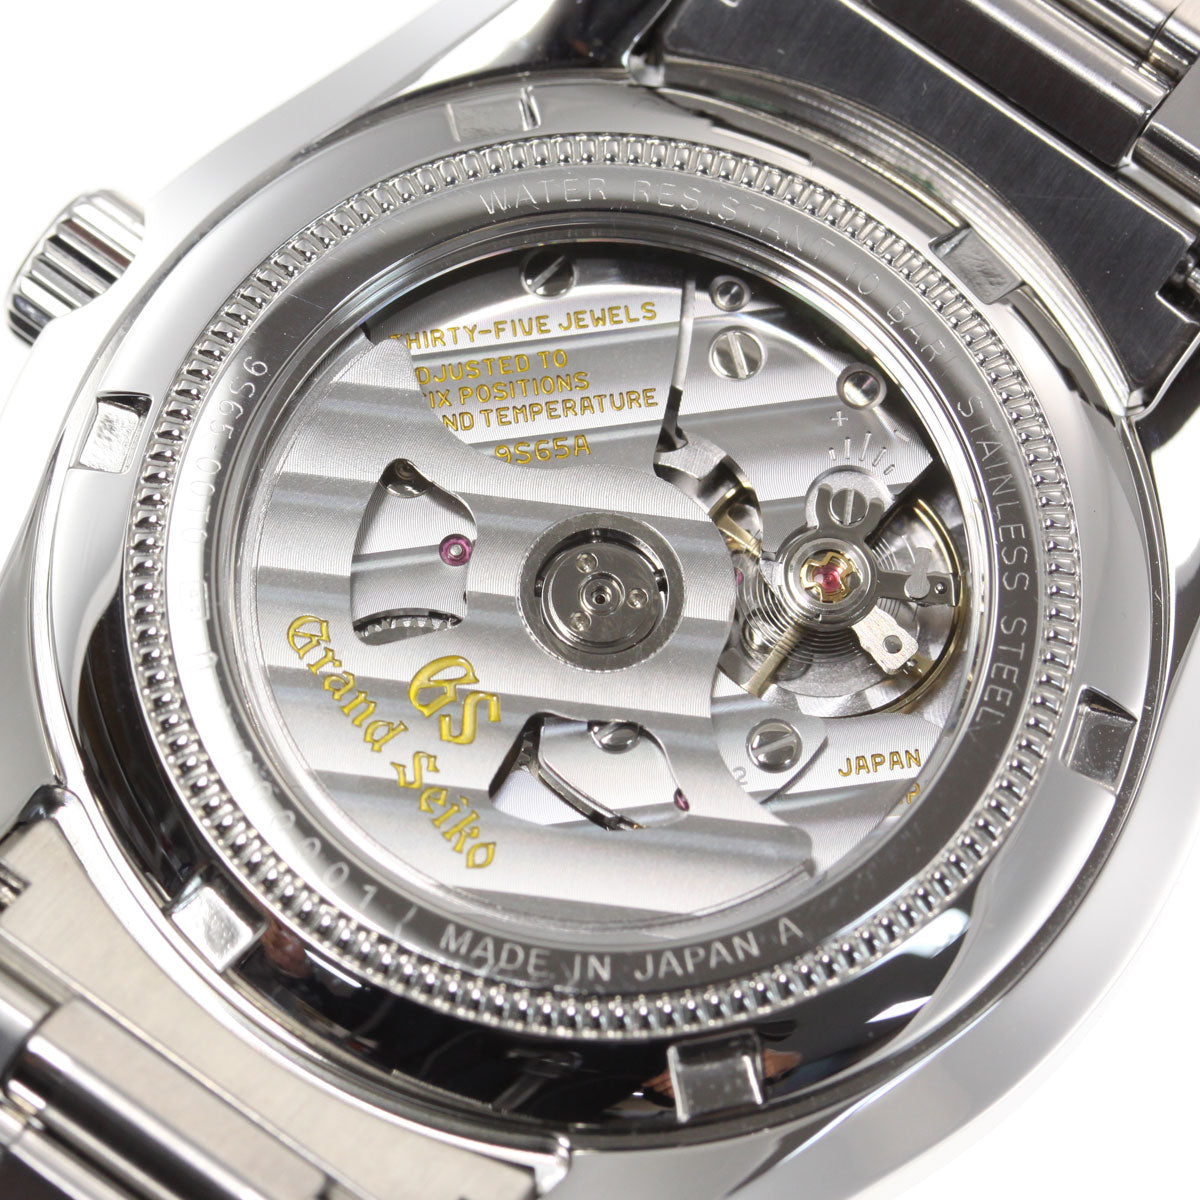 【36回分割手数料無料！】グランドセイコー GRAND SEIKO メカニカル 自動巻き 腕時計 メンズ SBGR317【正規品】